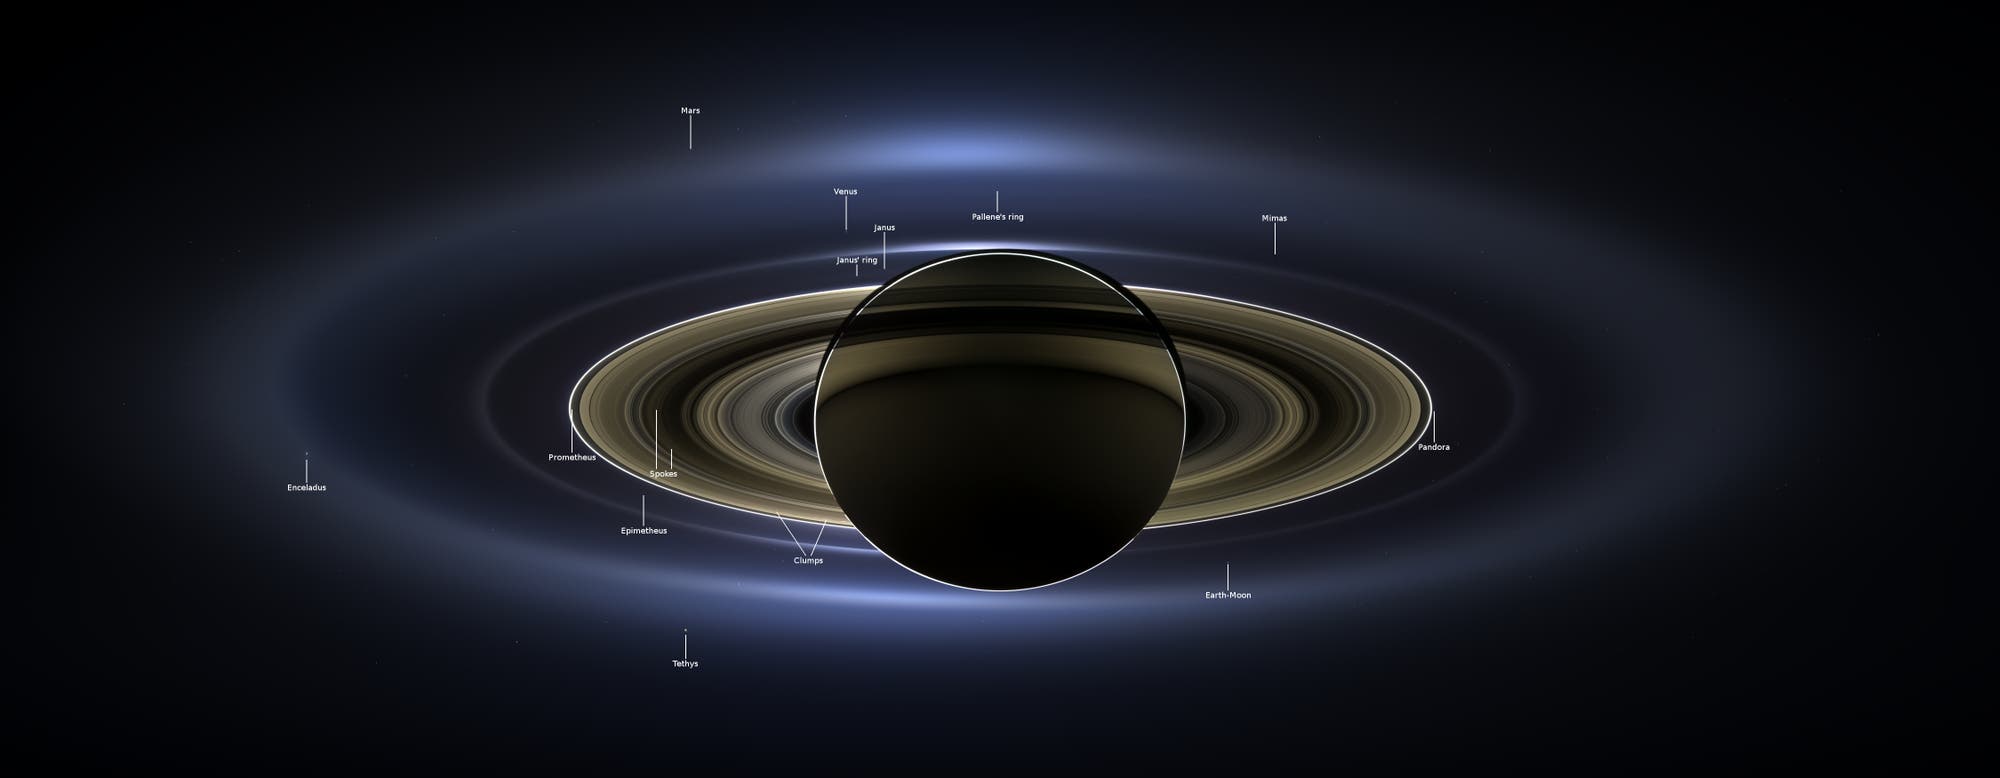 Saturn in Großaufnahme mit Beschriftung